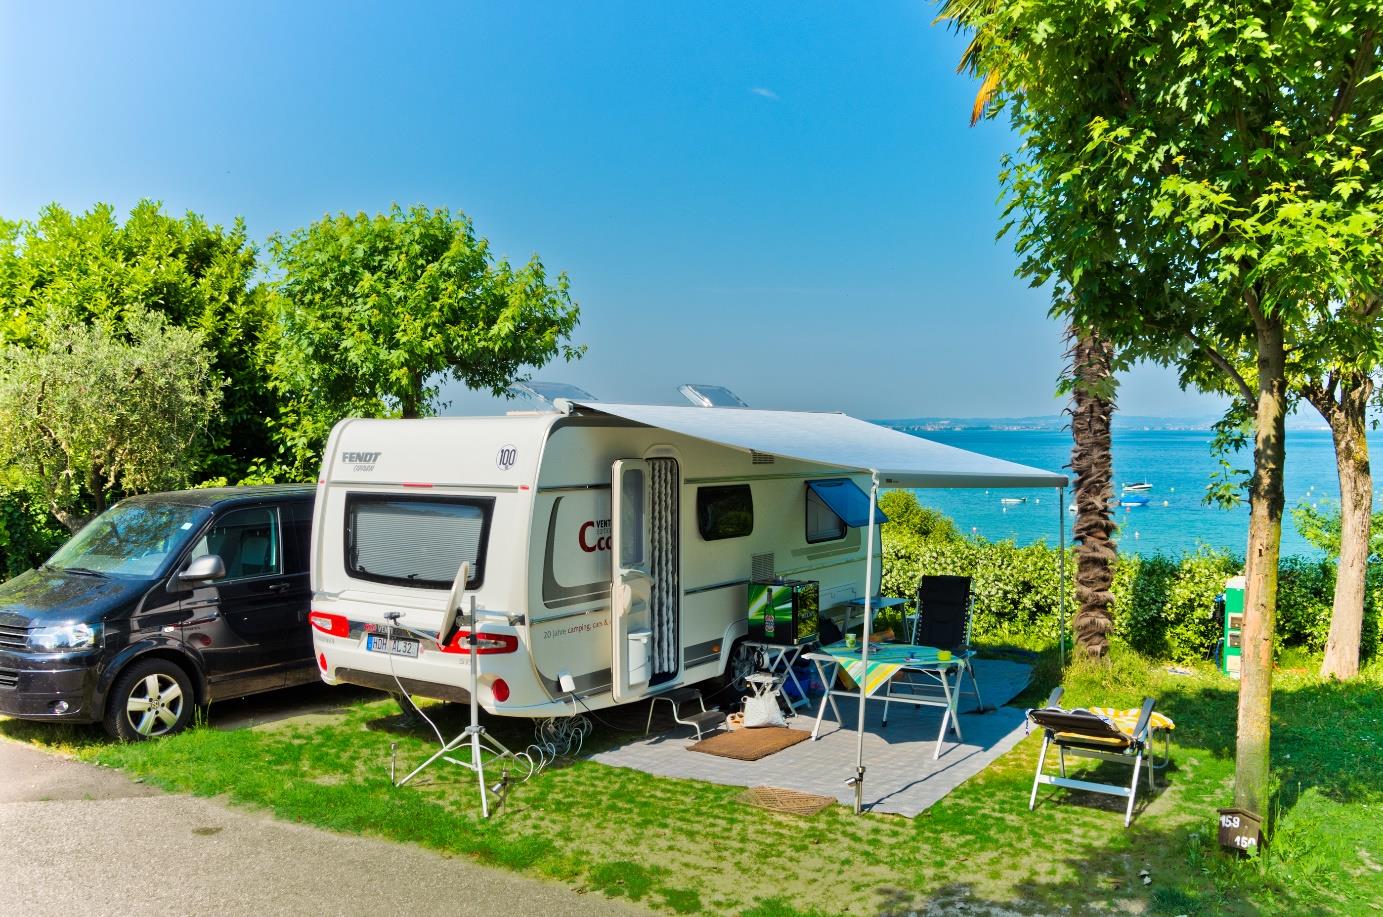 Lago oder Adria? – Familienurlaub auf den schönsten Campingplätzen Italiens